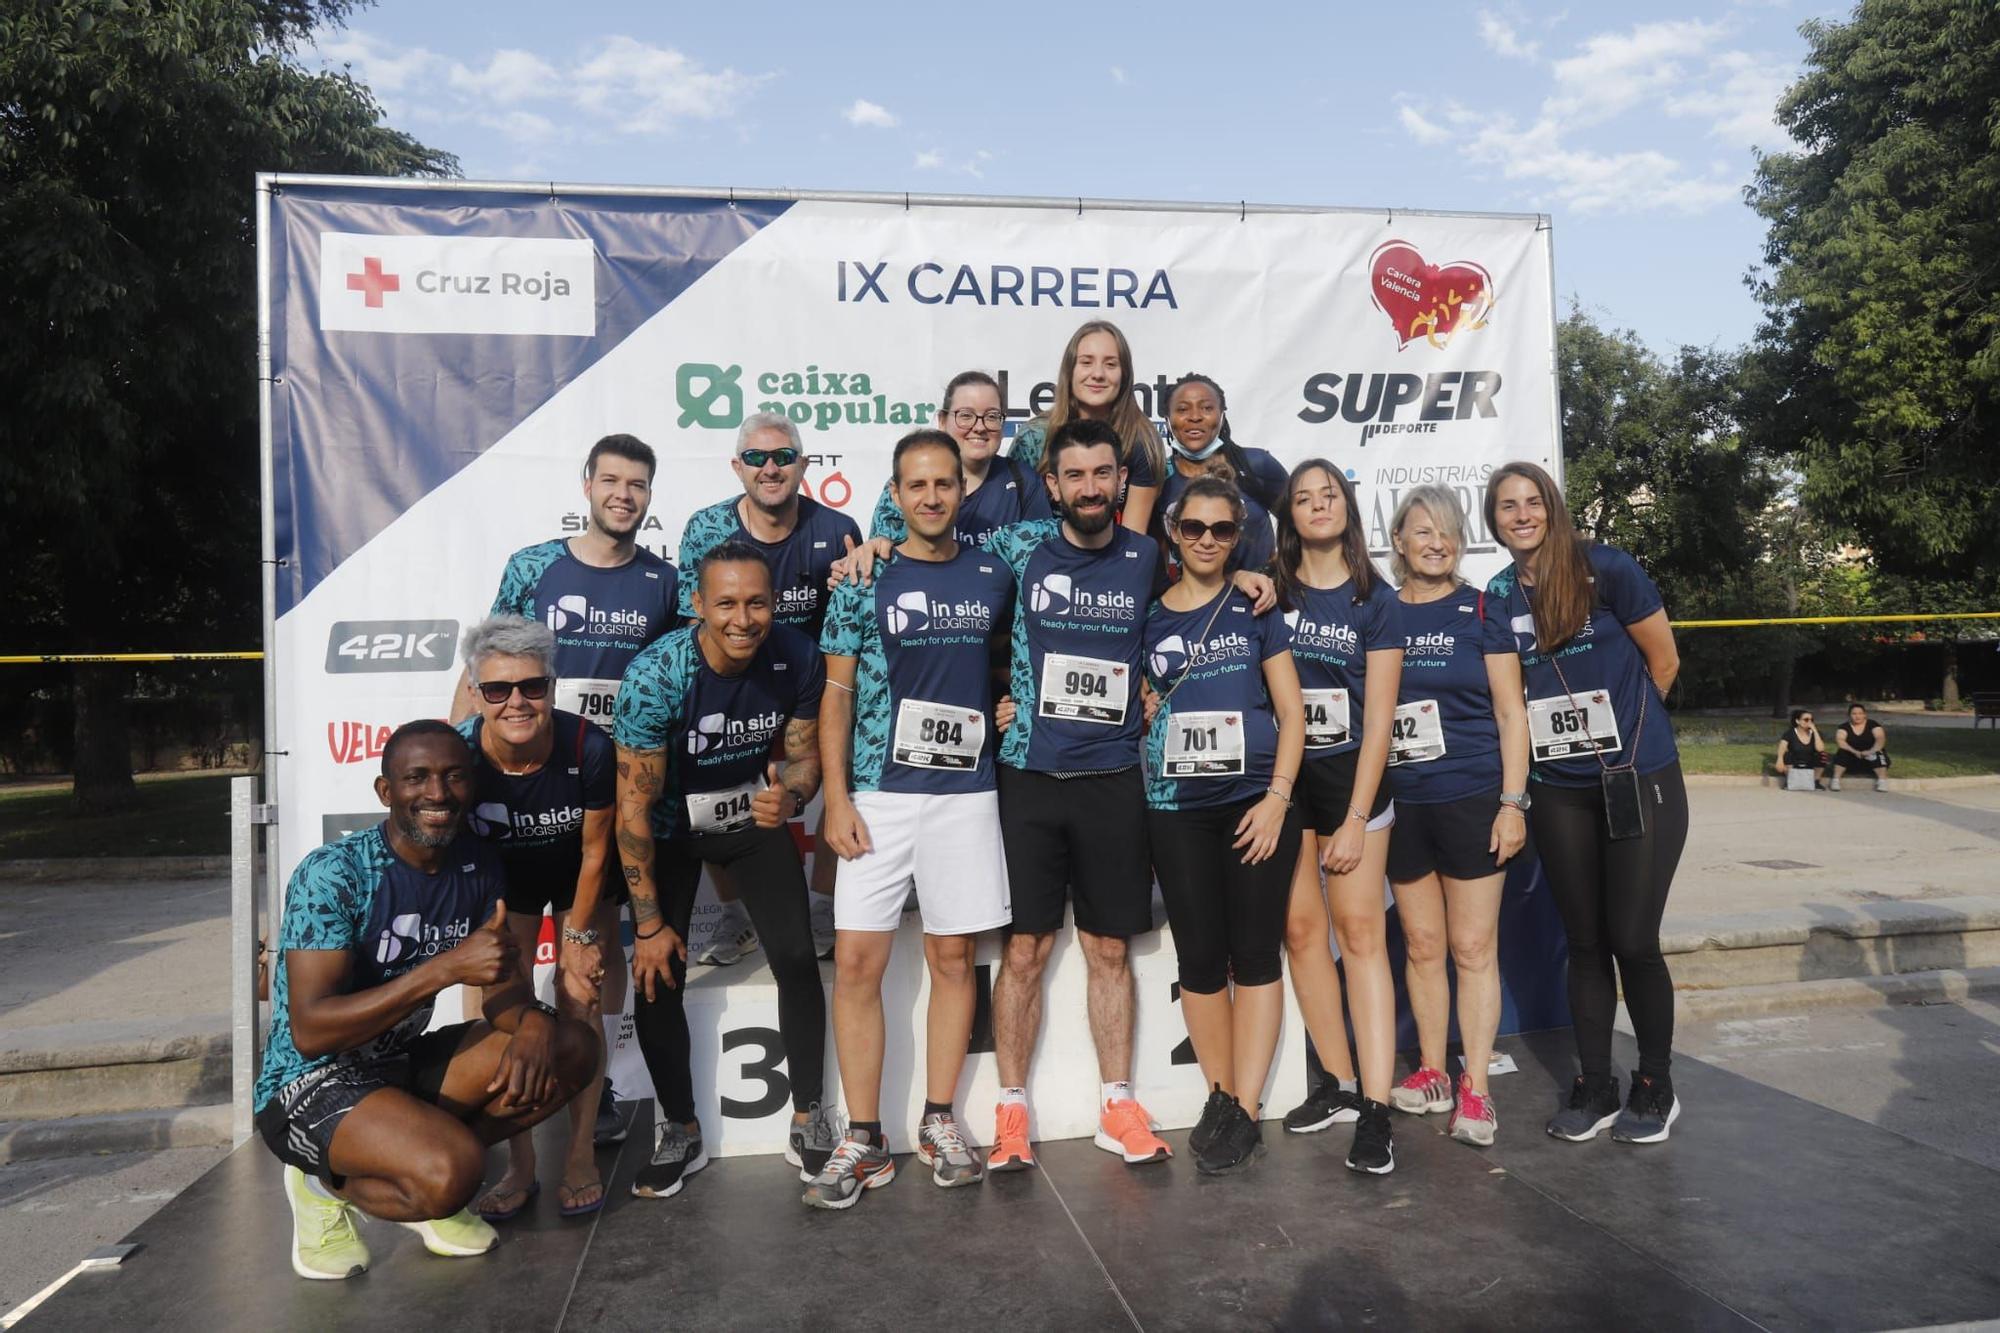 Miles de corredores en IX Carrera de Cruz Roja en València